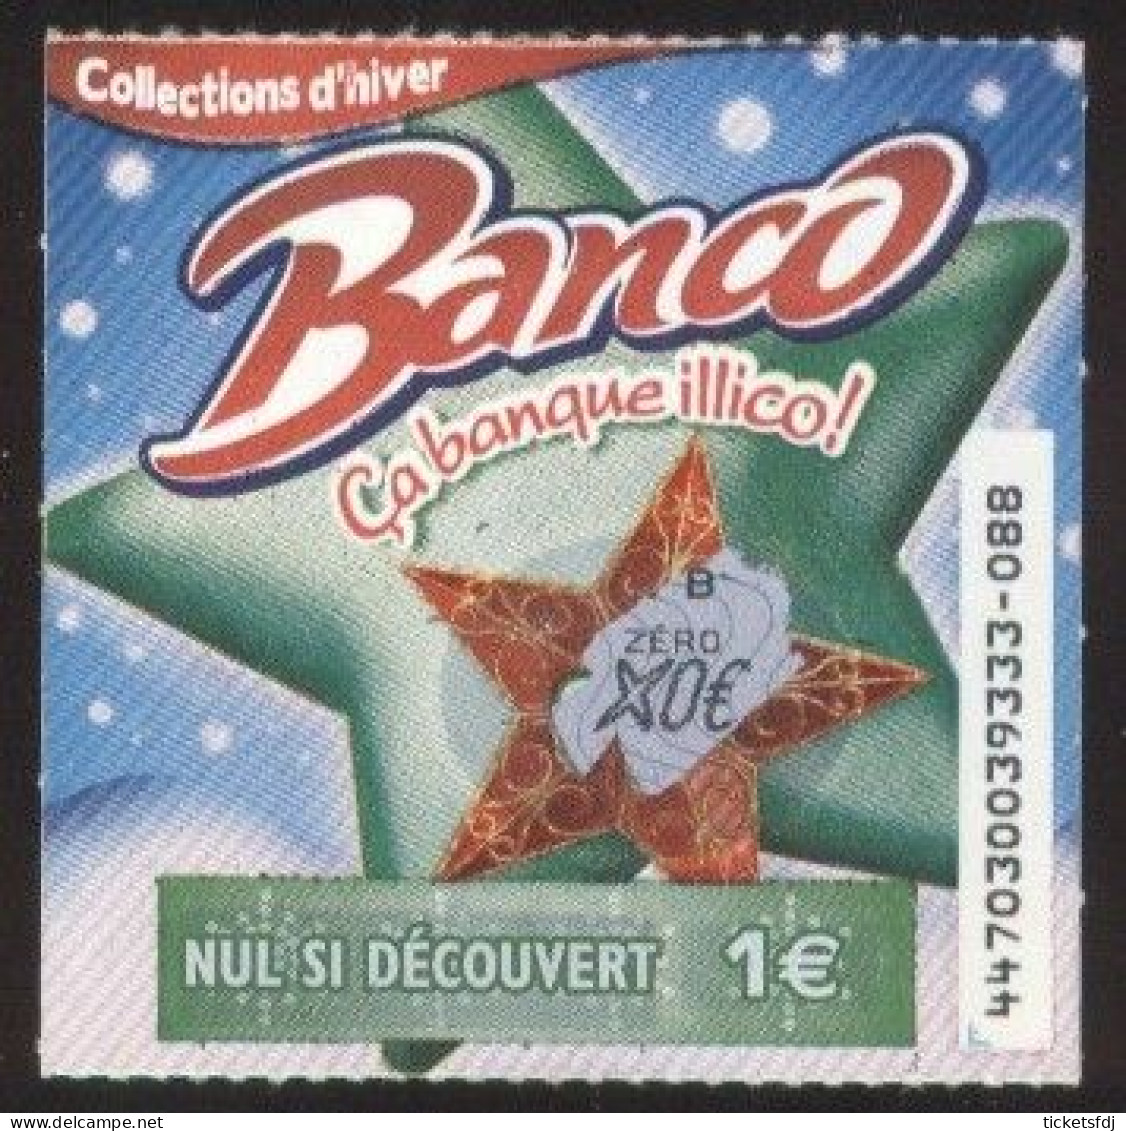 grattage FDJ - tickets BANCO au choix (39101-44701-44702-44703) FRANCAISE DES JEUX